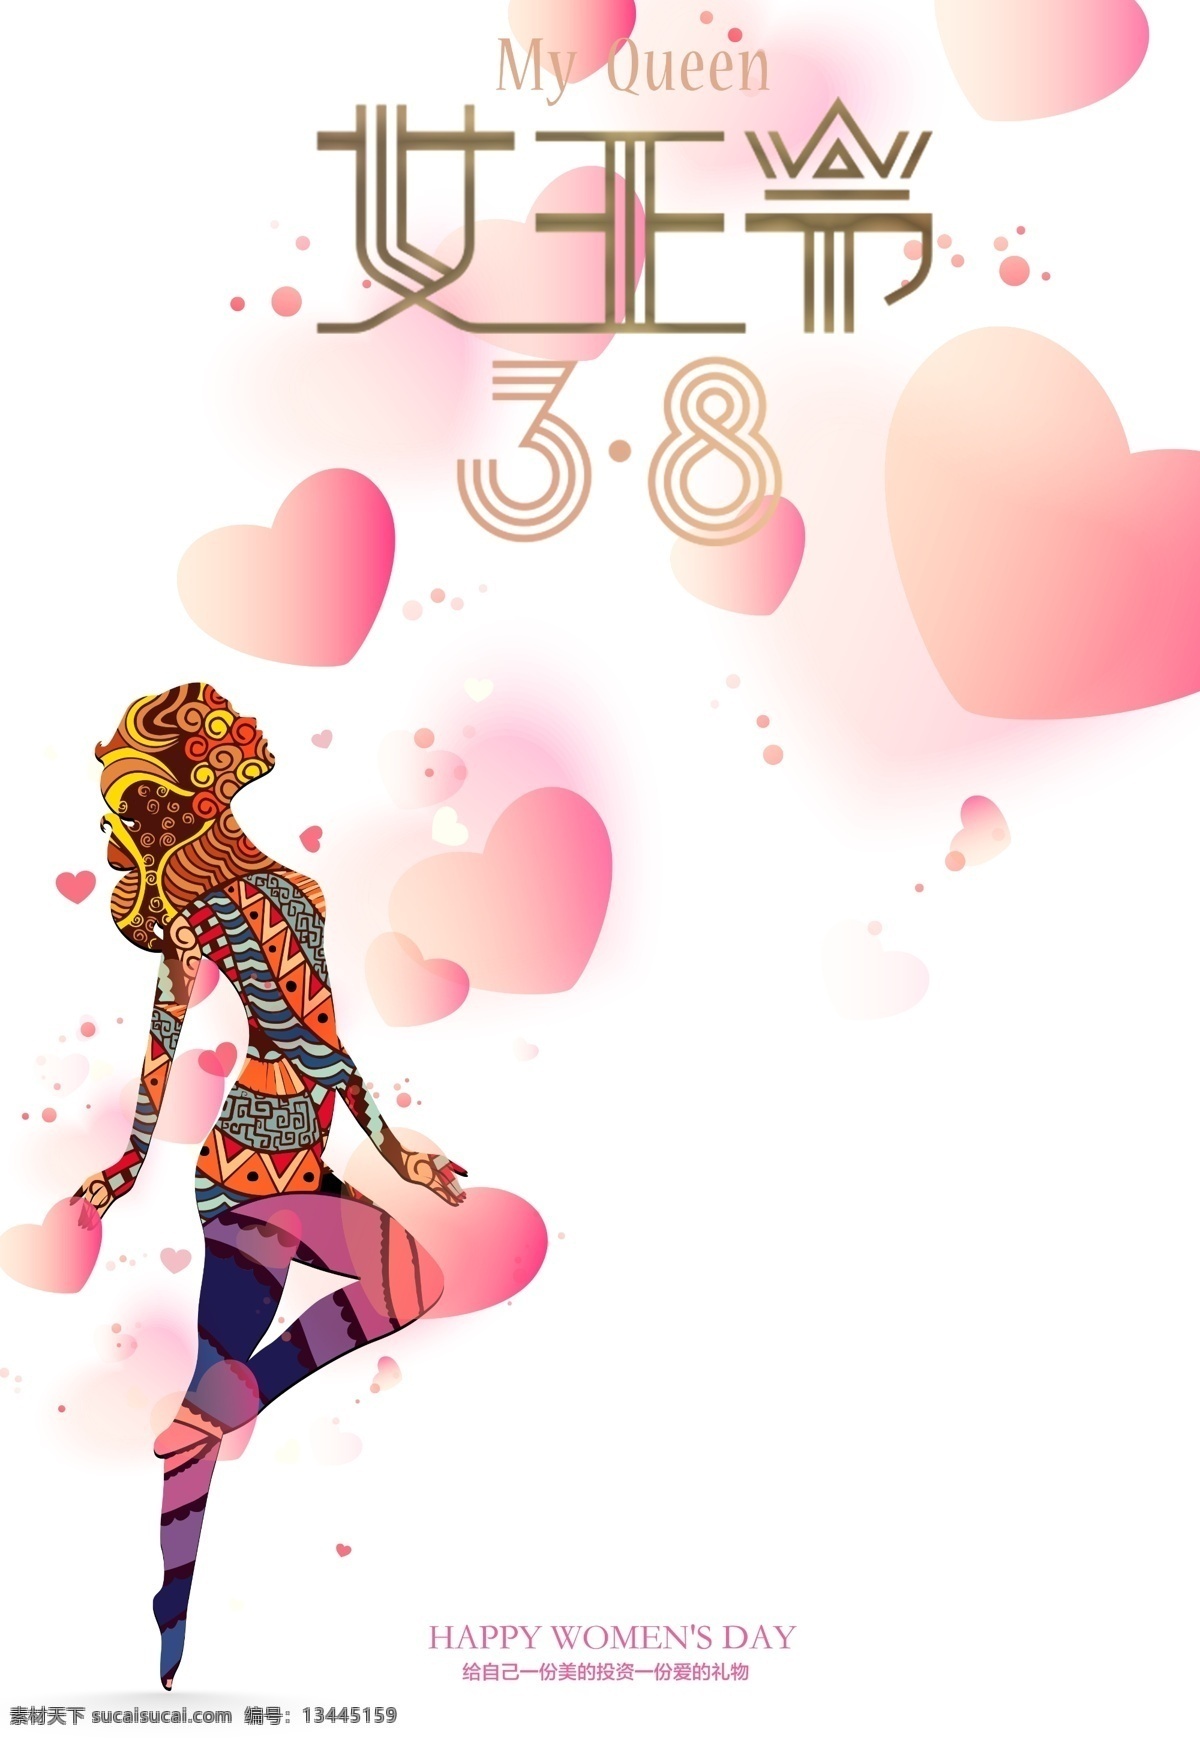 女王 节 海报 背景 38女王节 简约主题 粉色海报 psd素材 妇女节